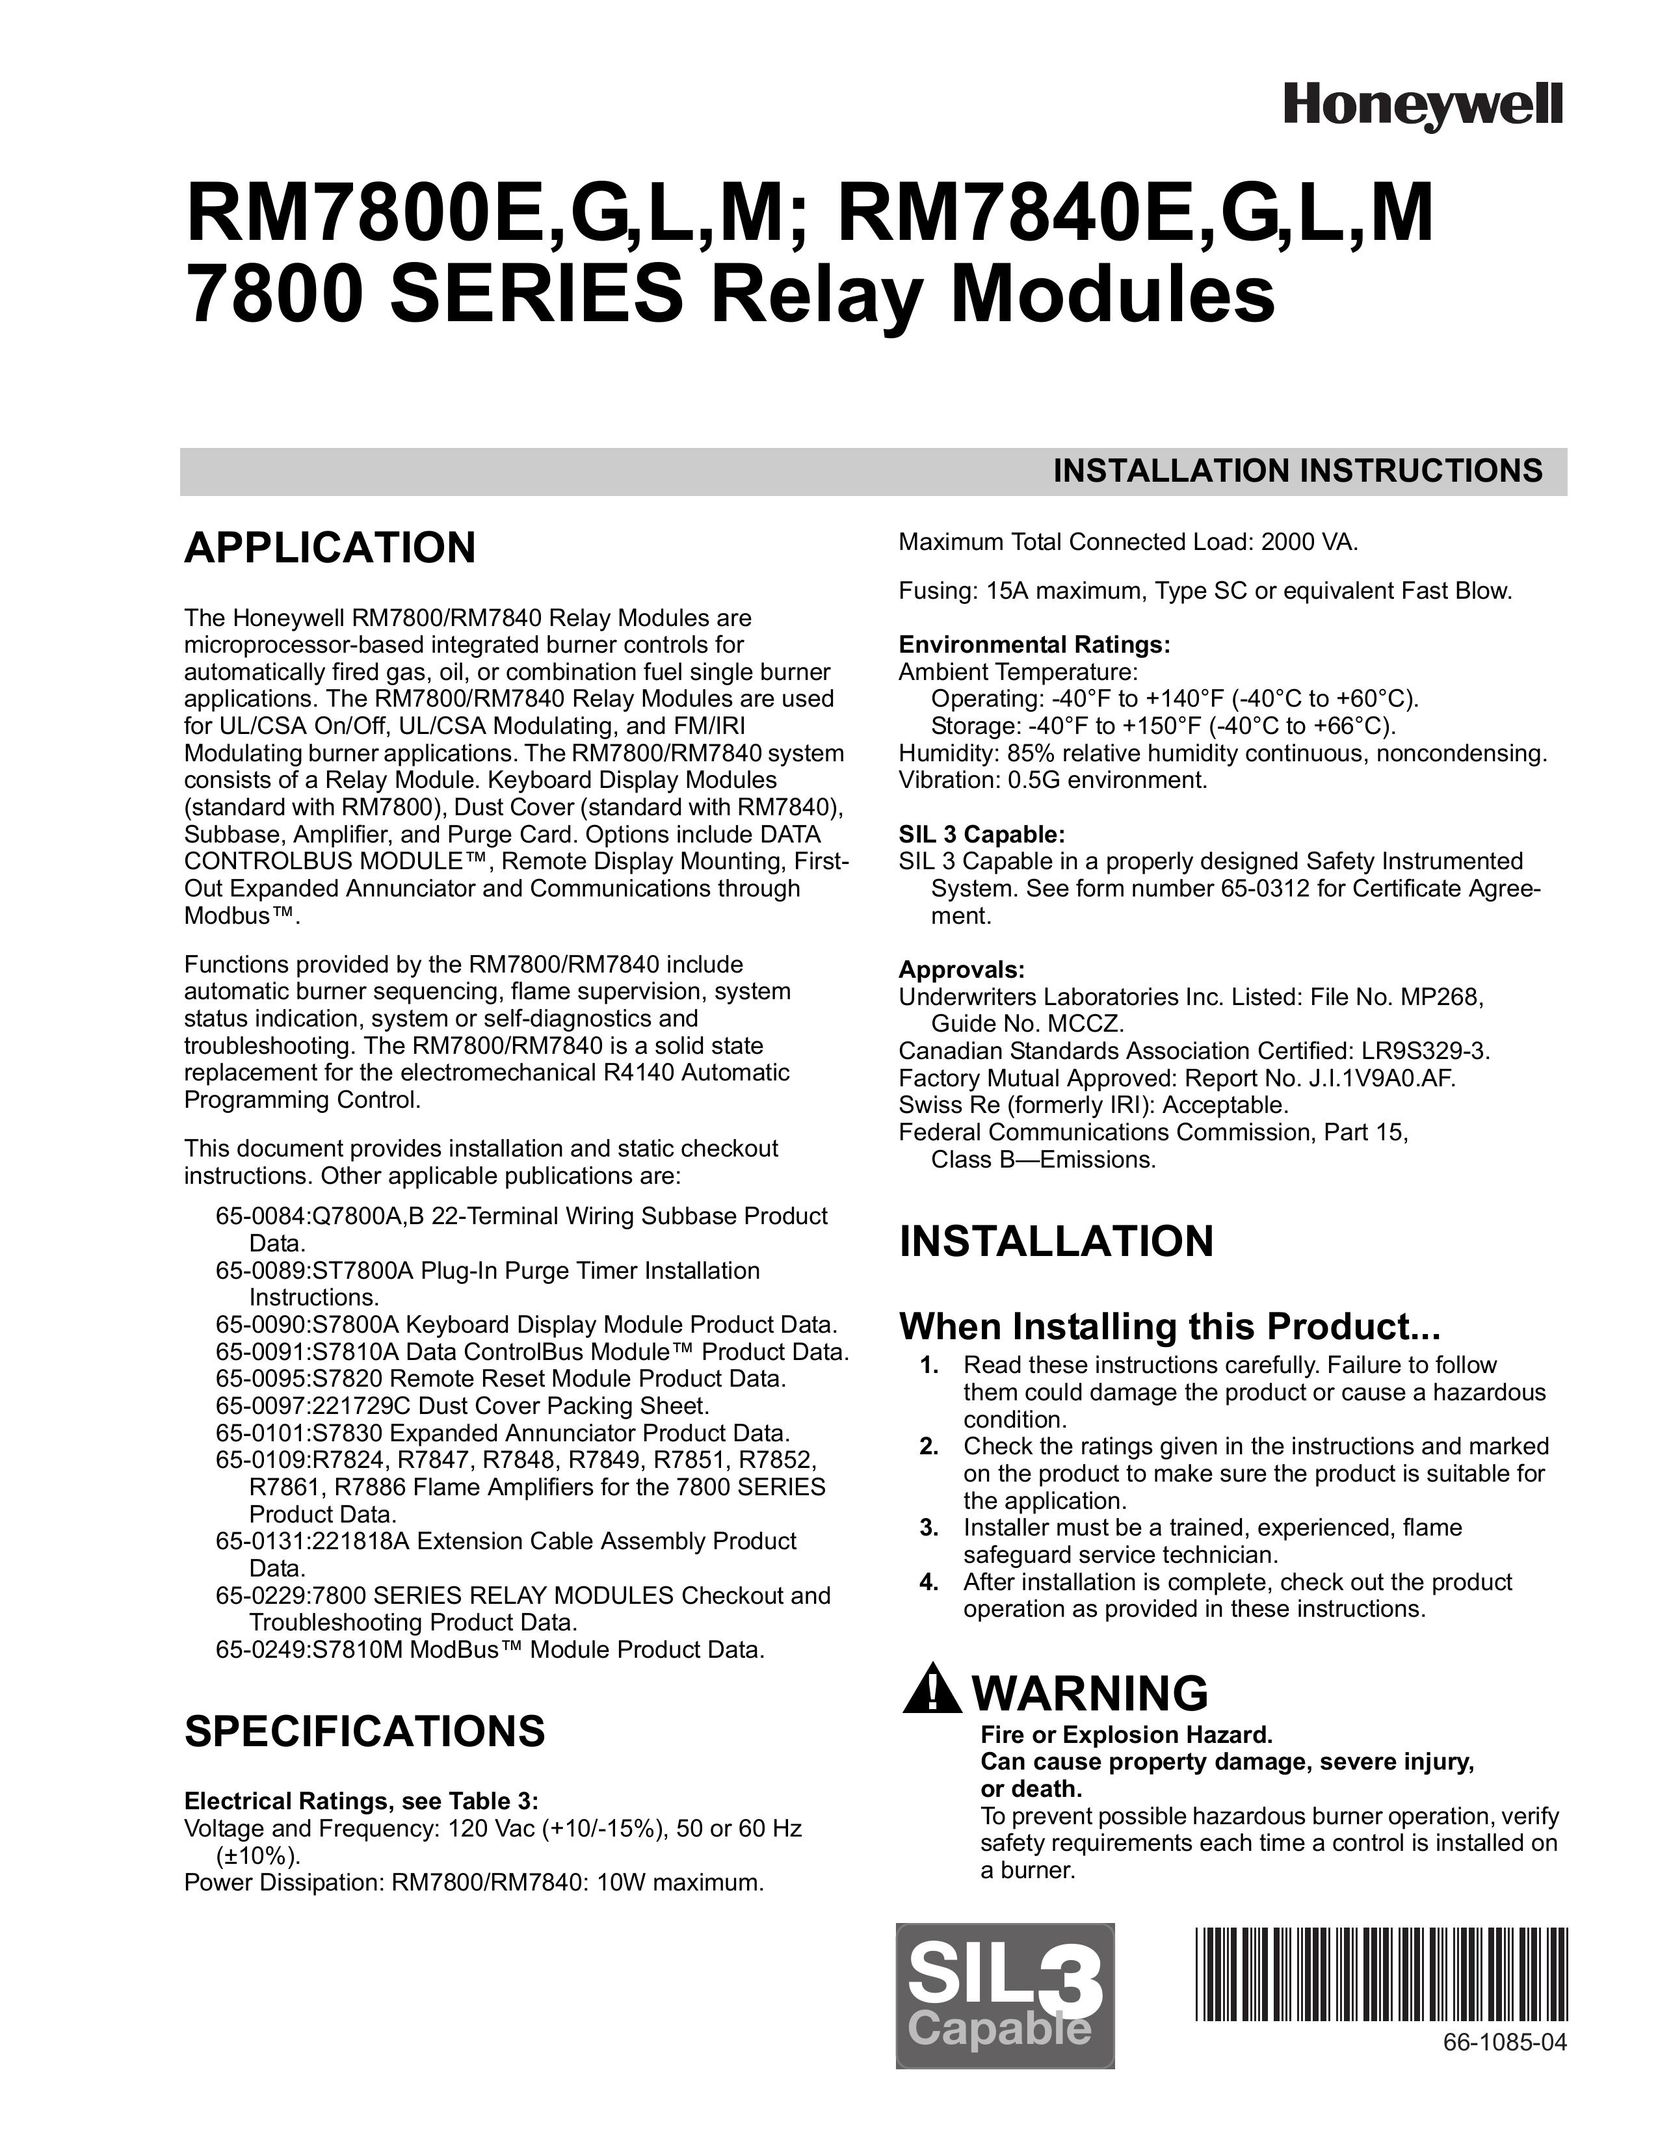 Honeywell RM7800E Burner User Manual